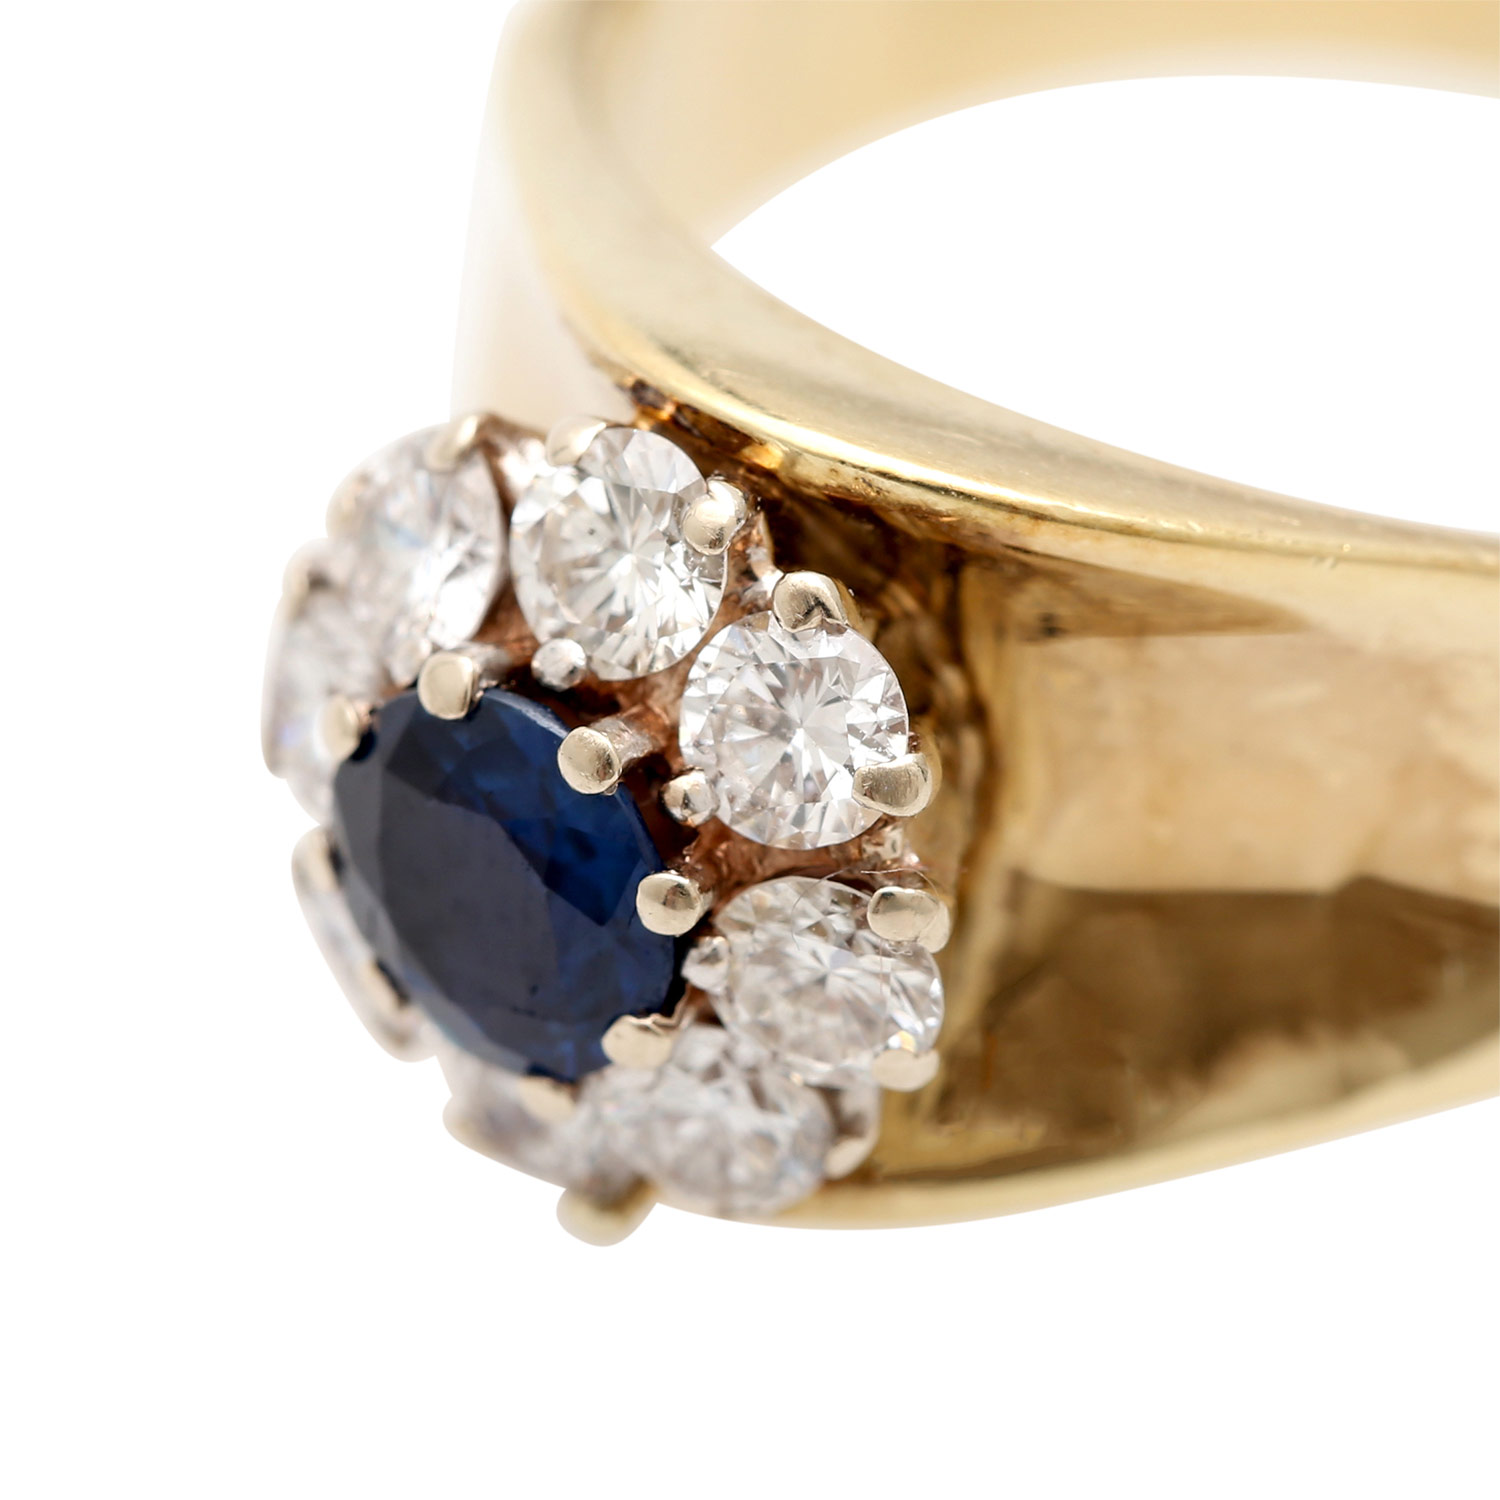 Damenring mit Saphir und Diamanten,8 Brillanten von zus. ca. 0,96 ct. (grav.), ca. FW- - Image 5 of 5